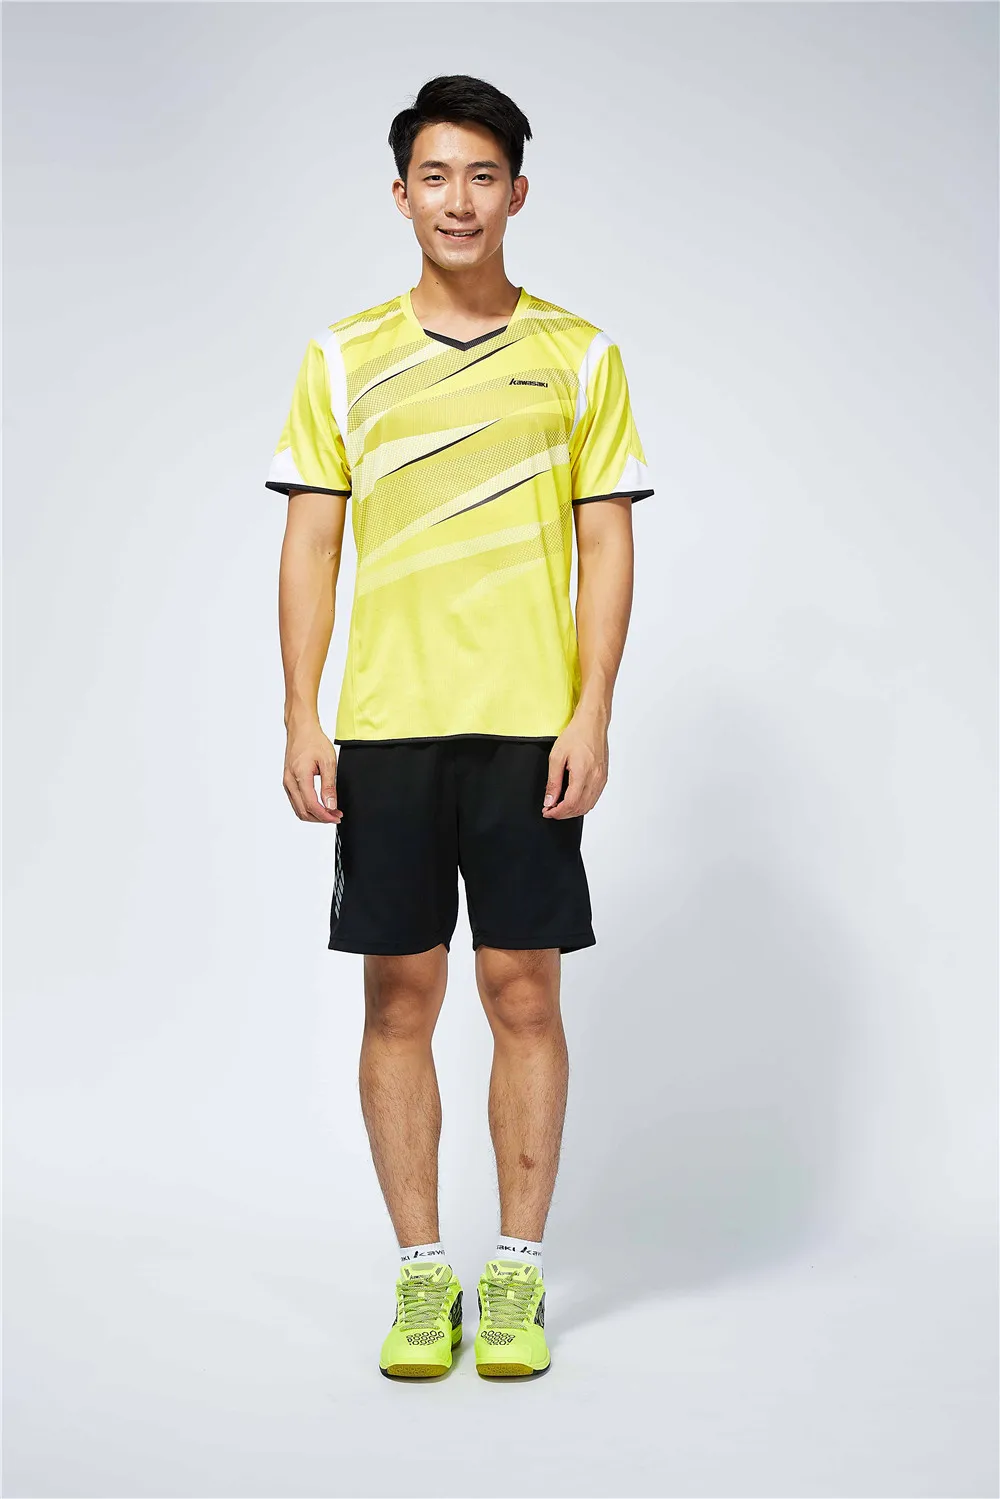 Kawasaki мужчины бадминтон футболки полиэстер Quick Dry V шеи Спортивная для фитнес теннис учебные одежда ST-T1004